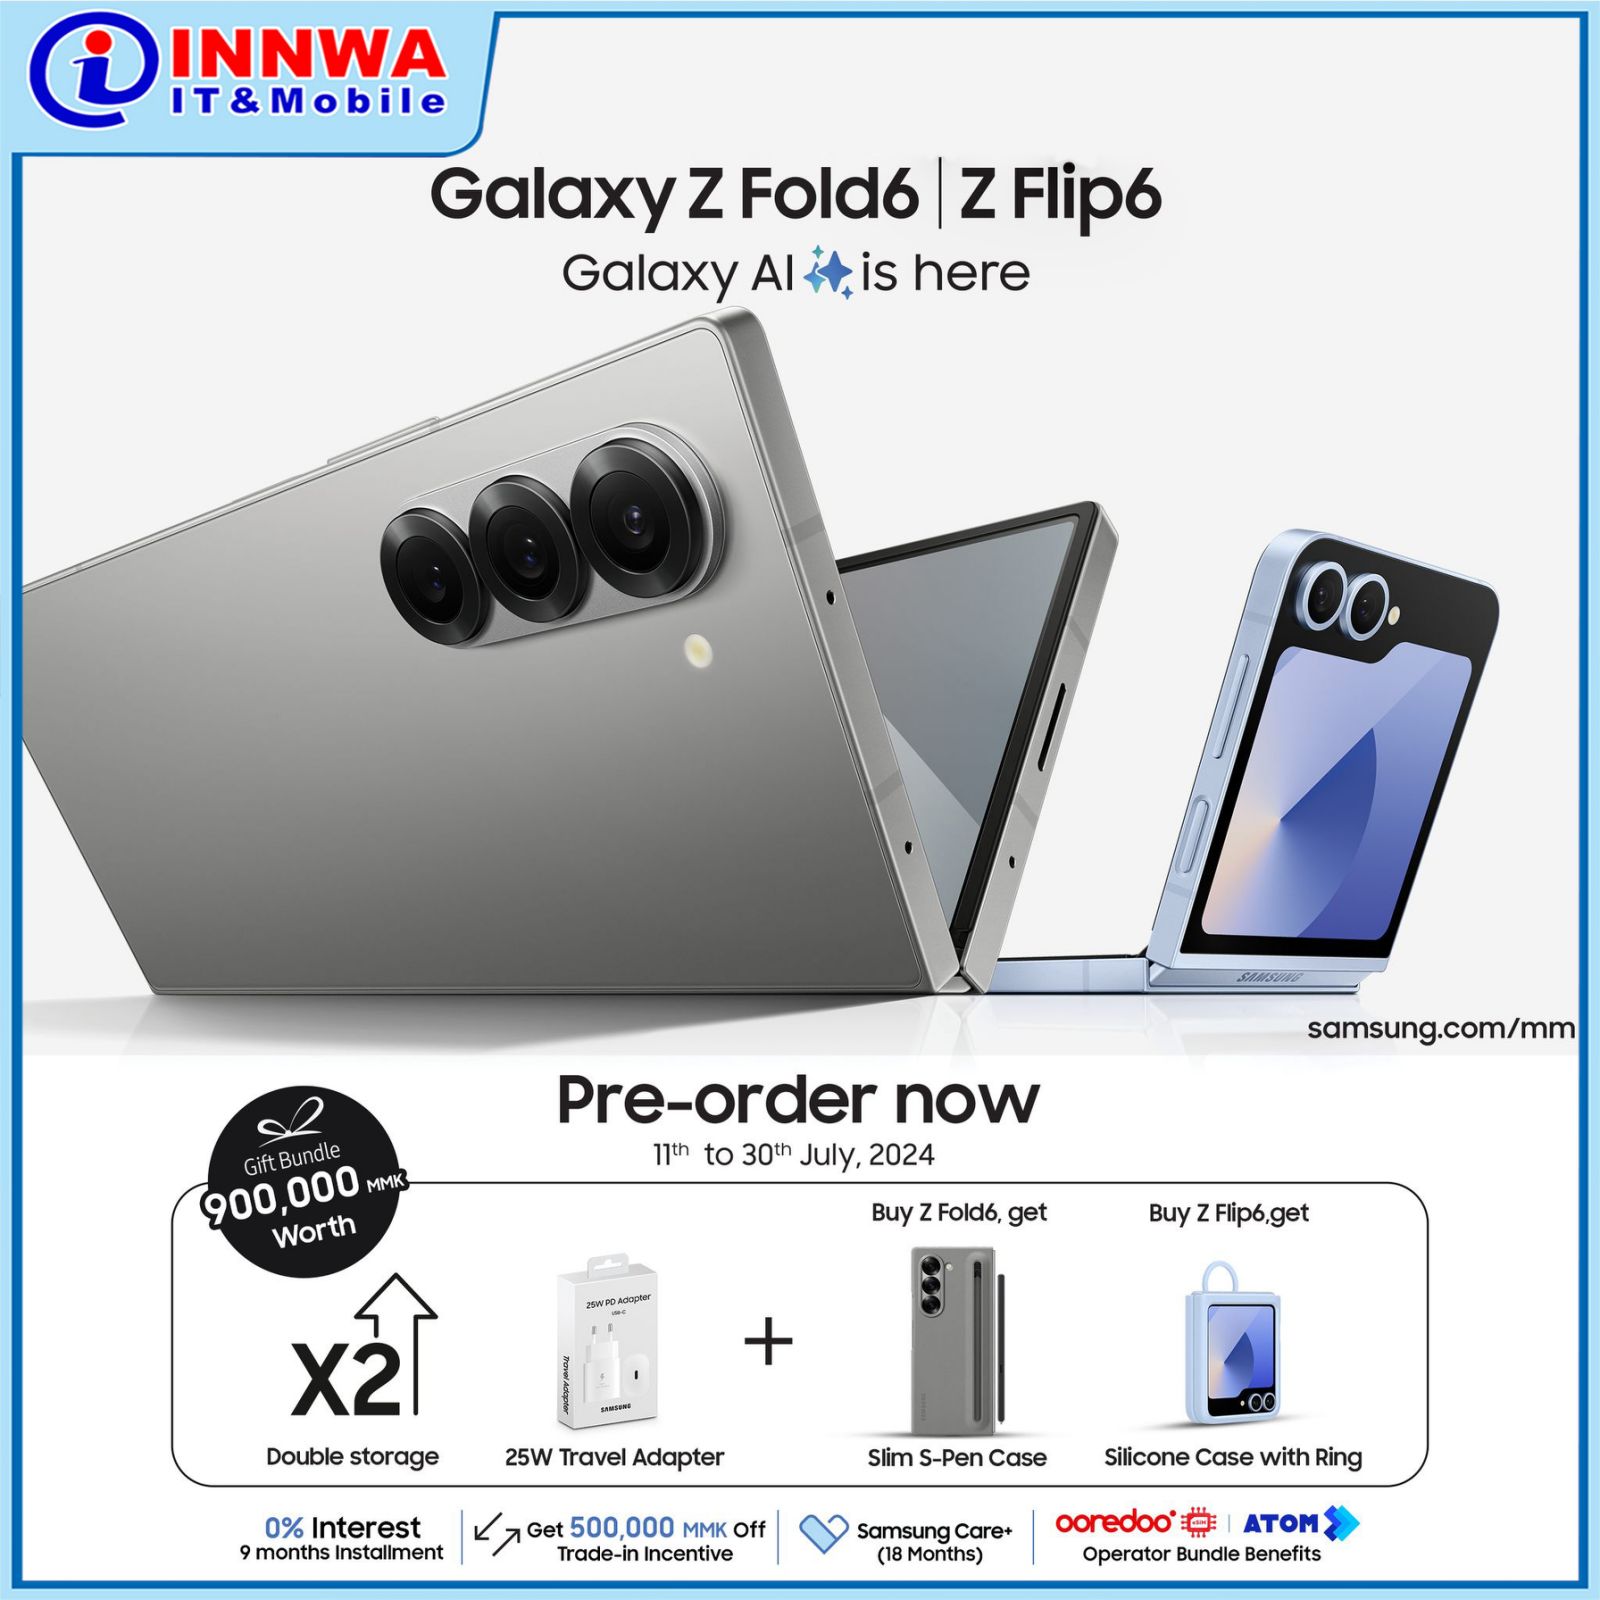 Samsung Galaxy Fold 6 | Flip 6 Pre-Order (11 - 30 July)